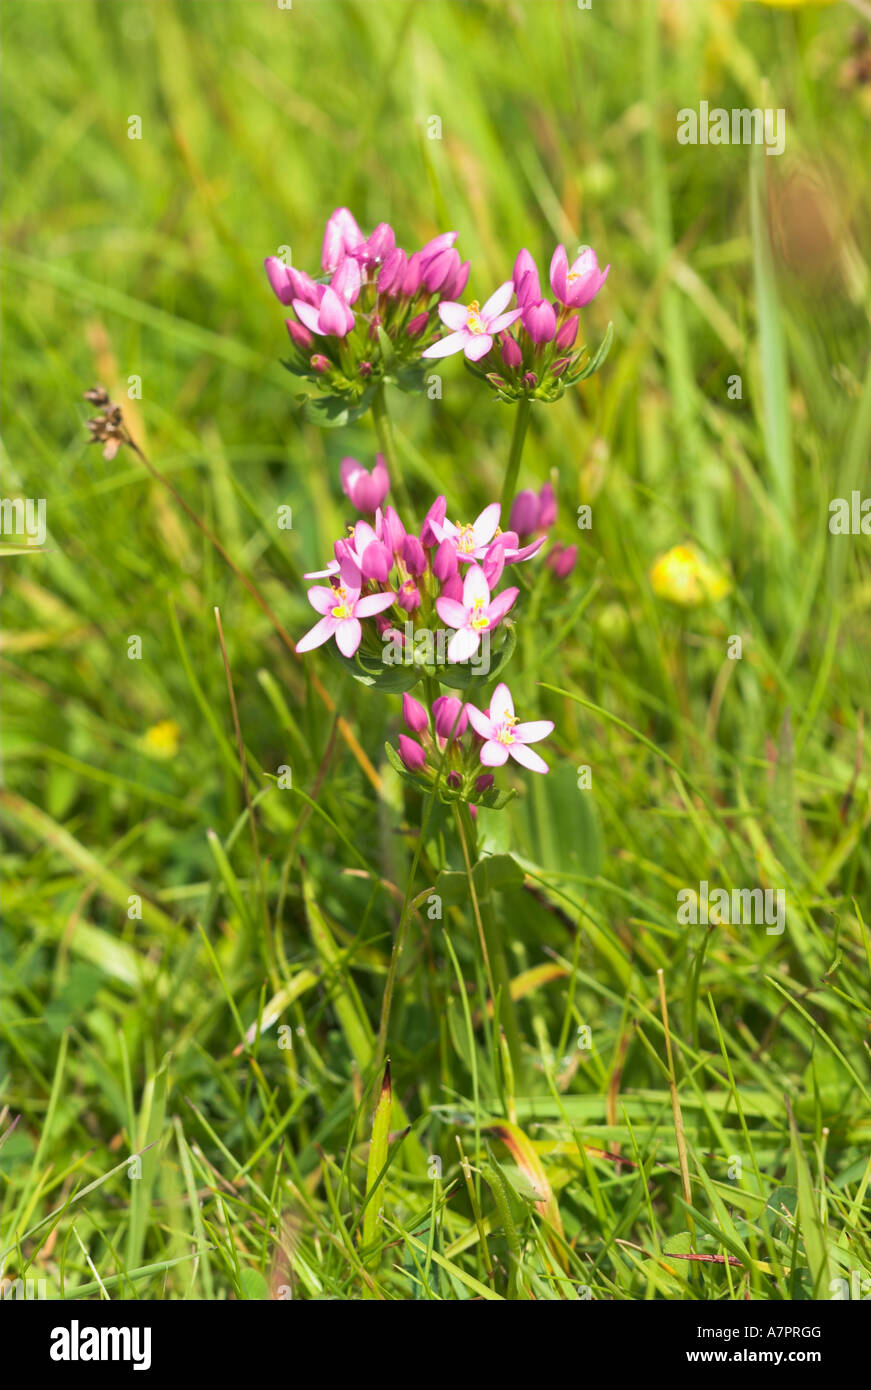 Common Centaury in Grassland Flower Stock Photo